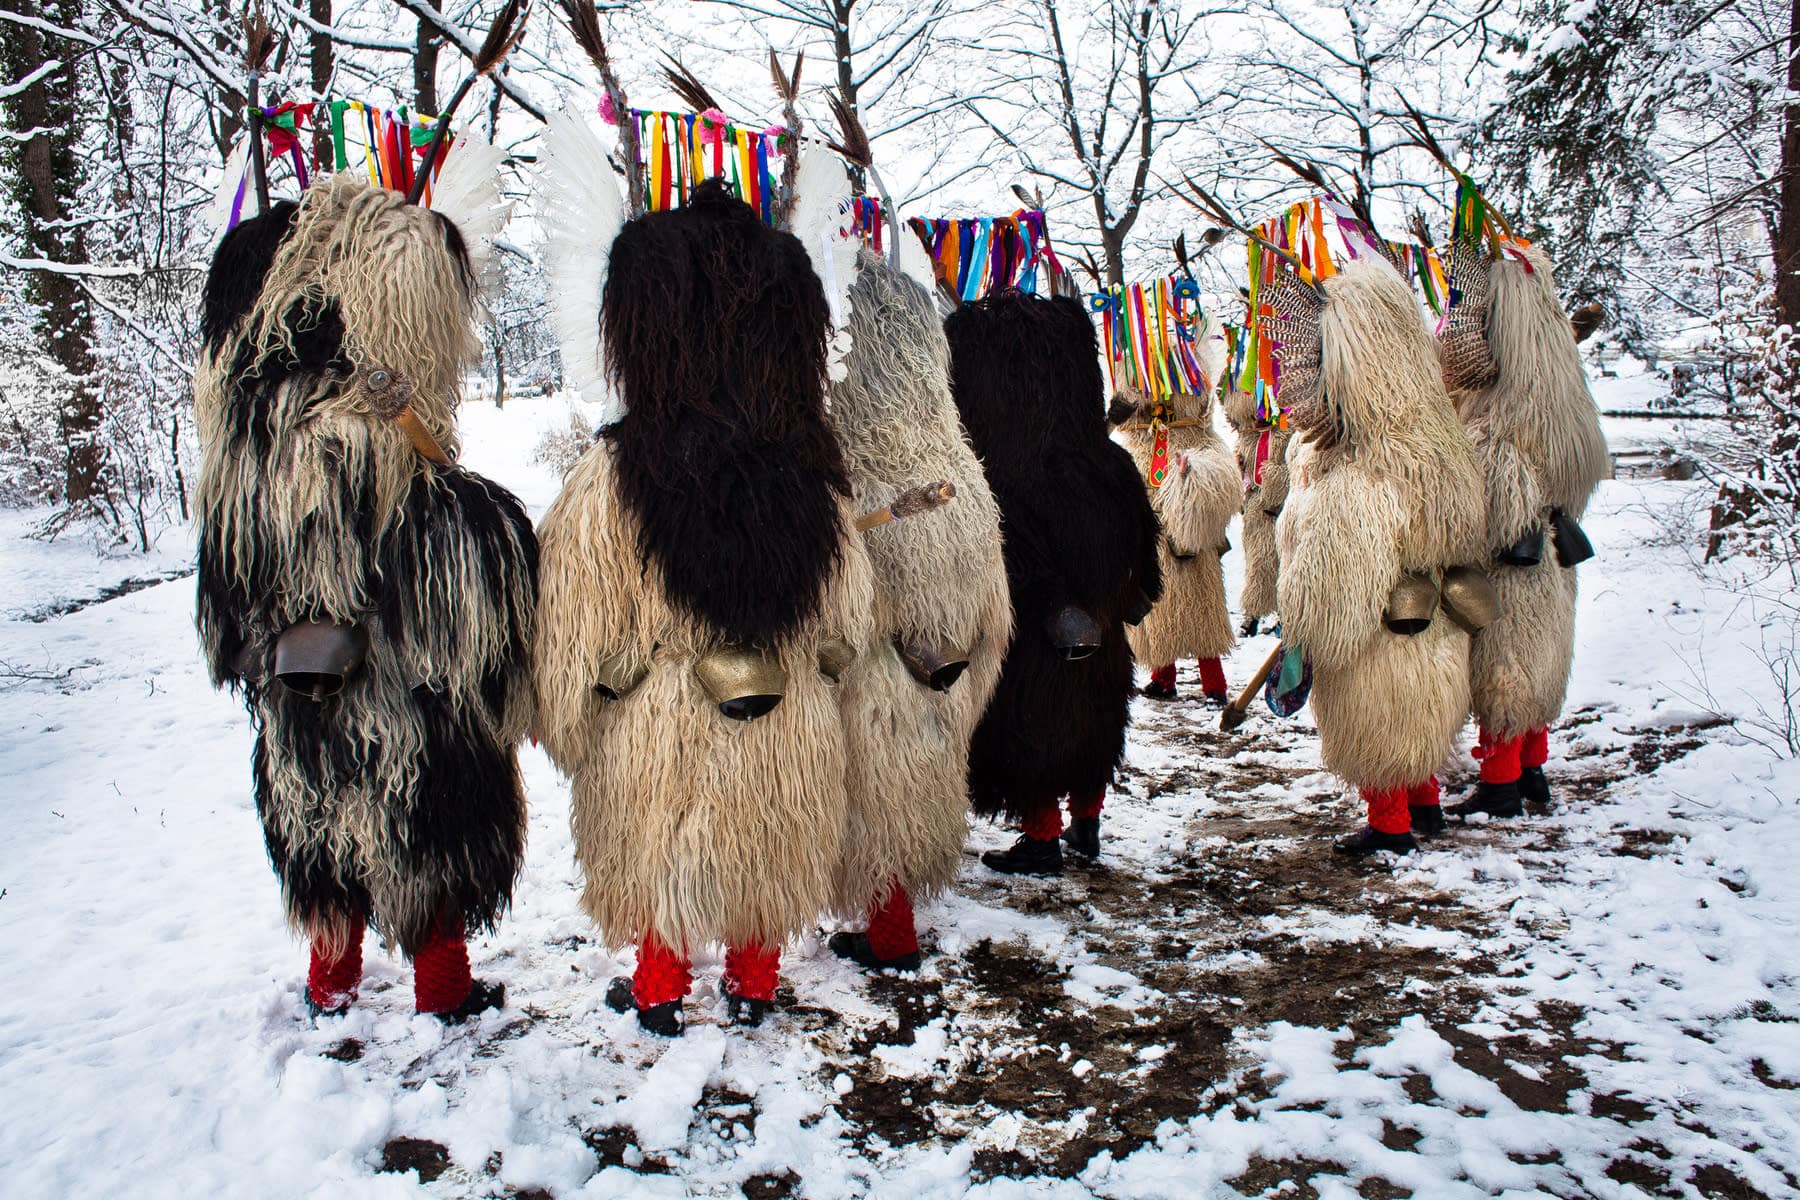 Chasing Away the Cold at Kurentovanje, Slovenia’s Spring Carnival